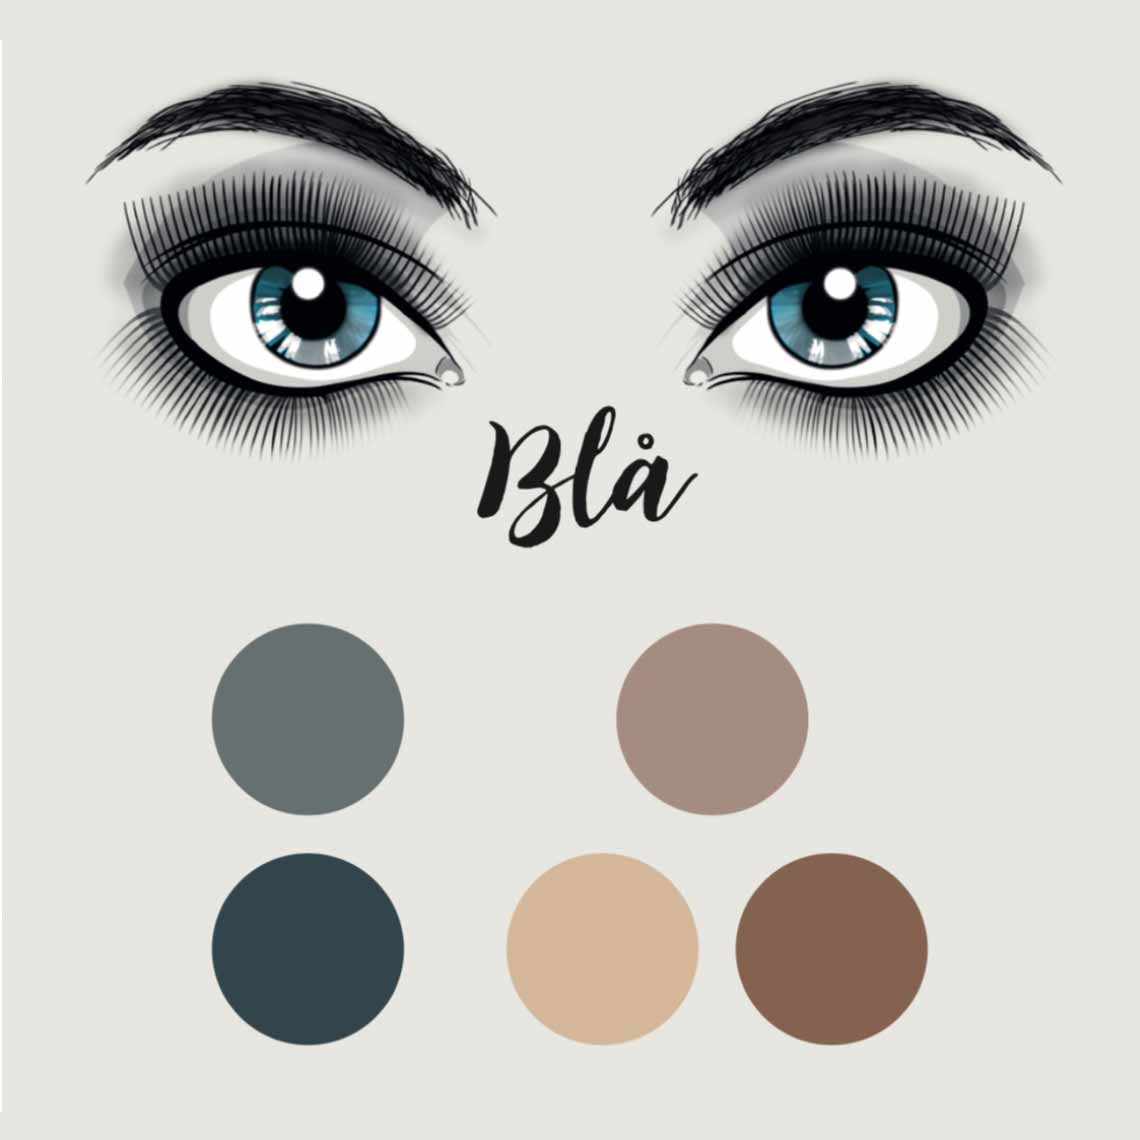 stribe skrive et brev arsenal Hvilken farve øjenskygge er pæn til blå øjne?" - By Tina Jakobsen